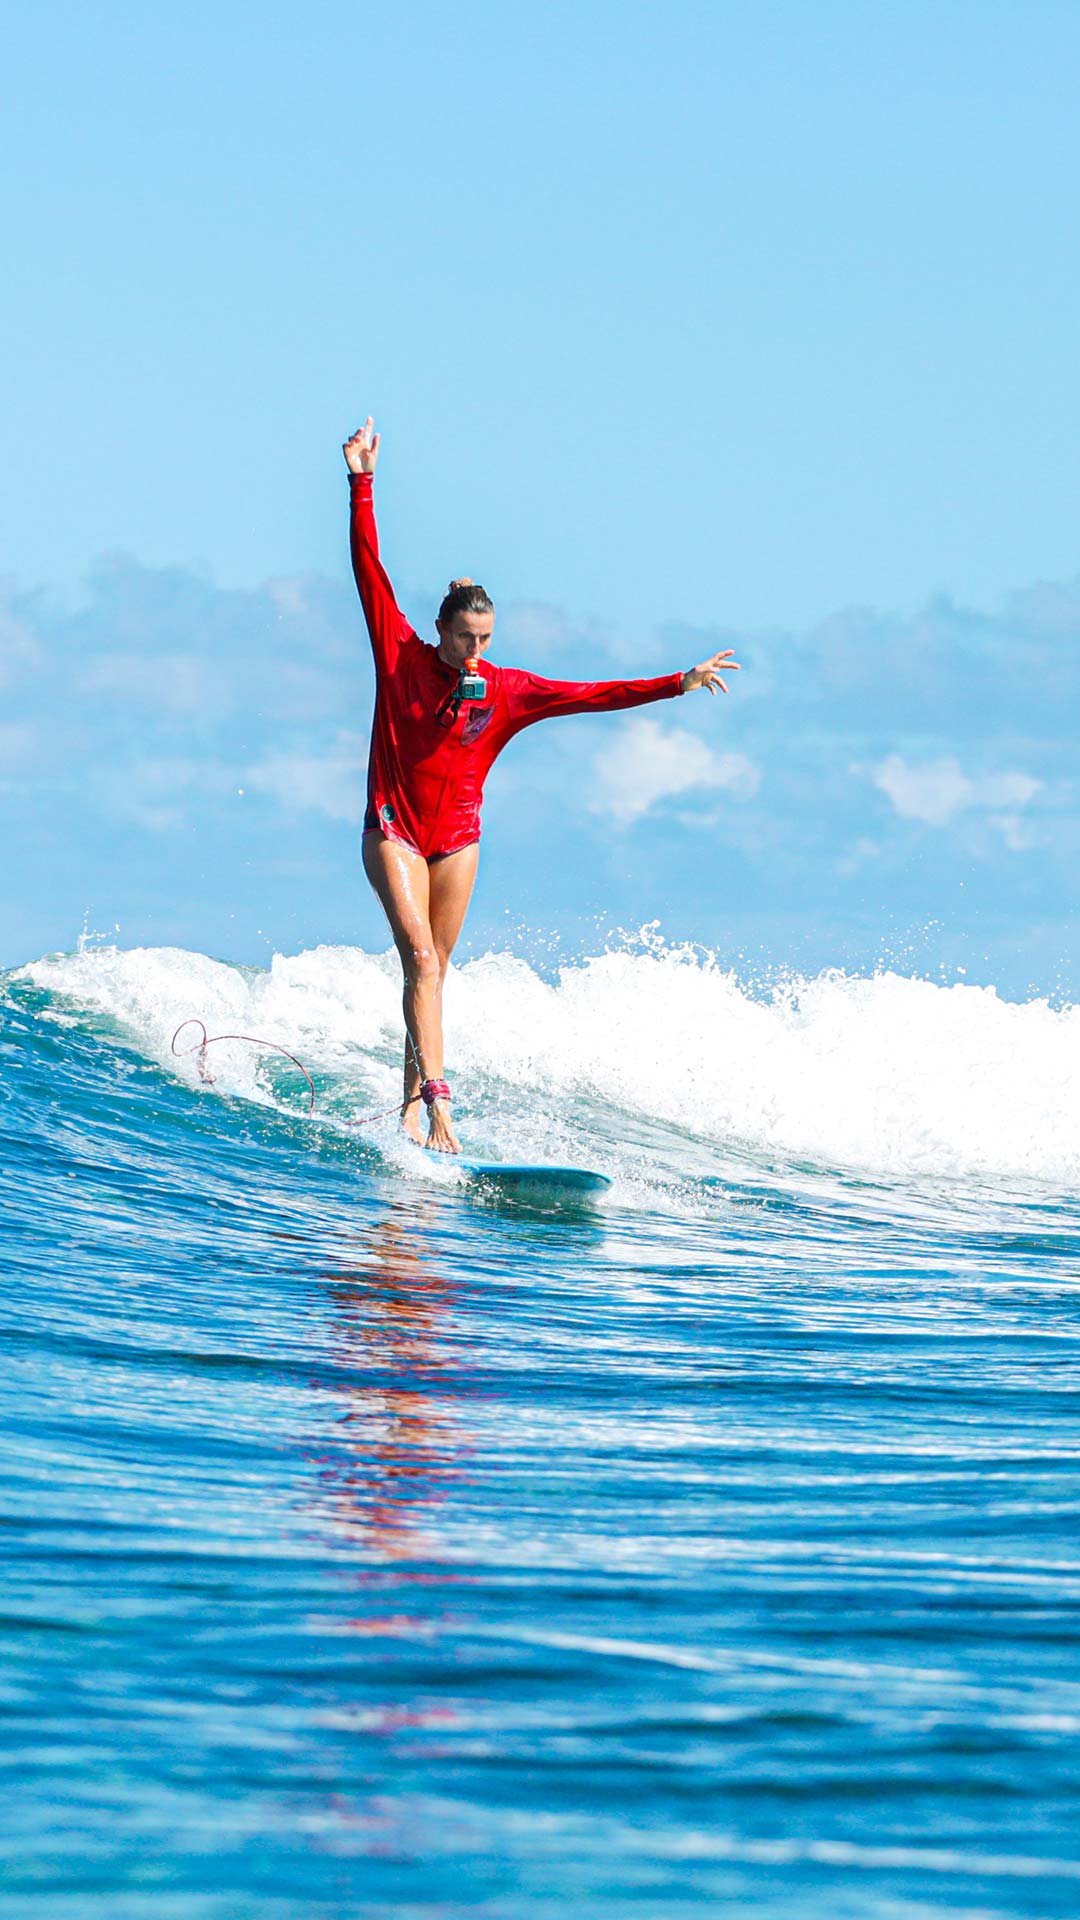 Eine Surflehrerin aus dem Ion Club-Team surft elegant auf einer Welle und nimmt ihren Ritt mit einer Go-Pro-Kamera auf, die an ihrem Mund hängt.